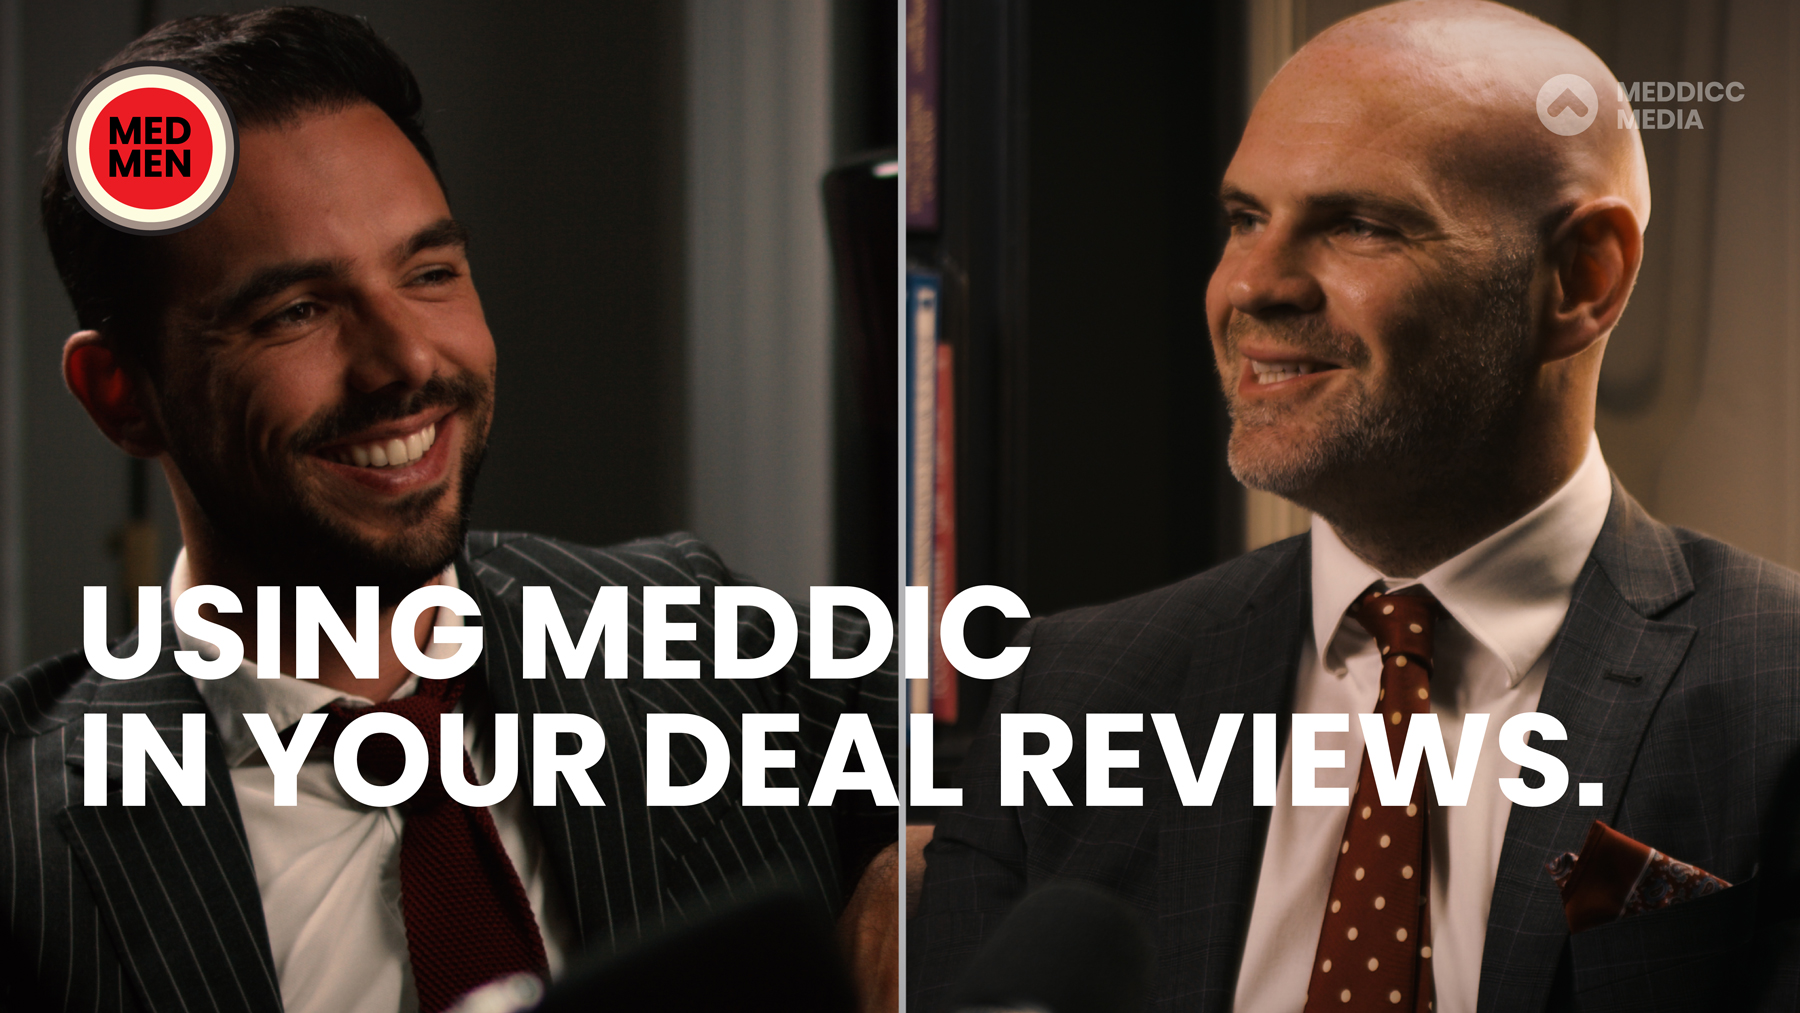 https://meddicc.com/meddicc-media/med-men-deal-reviews